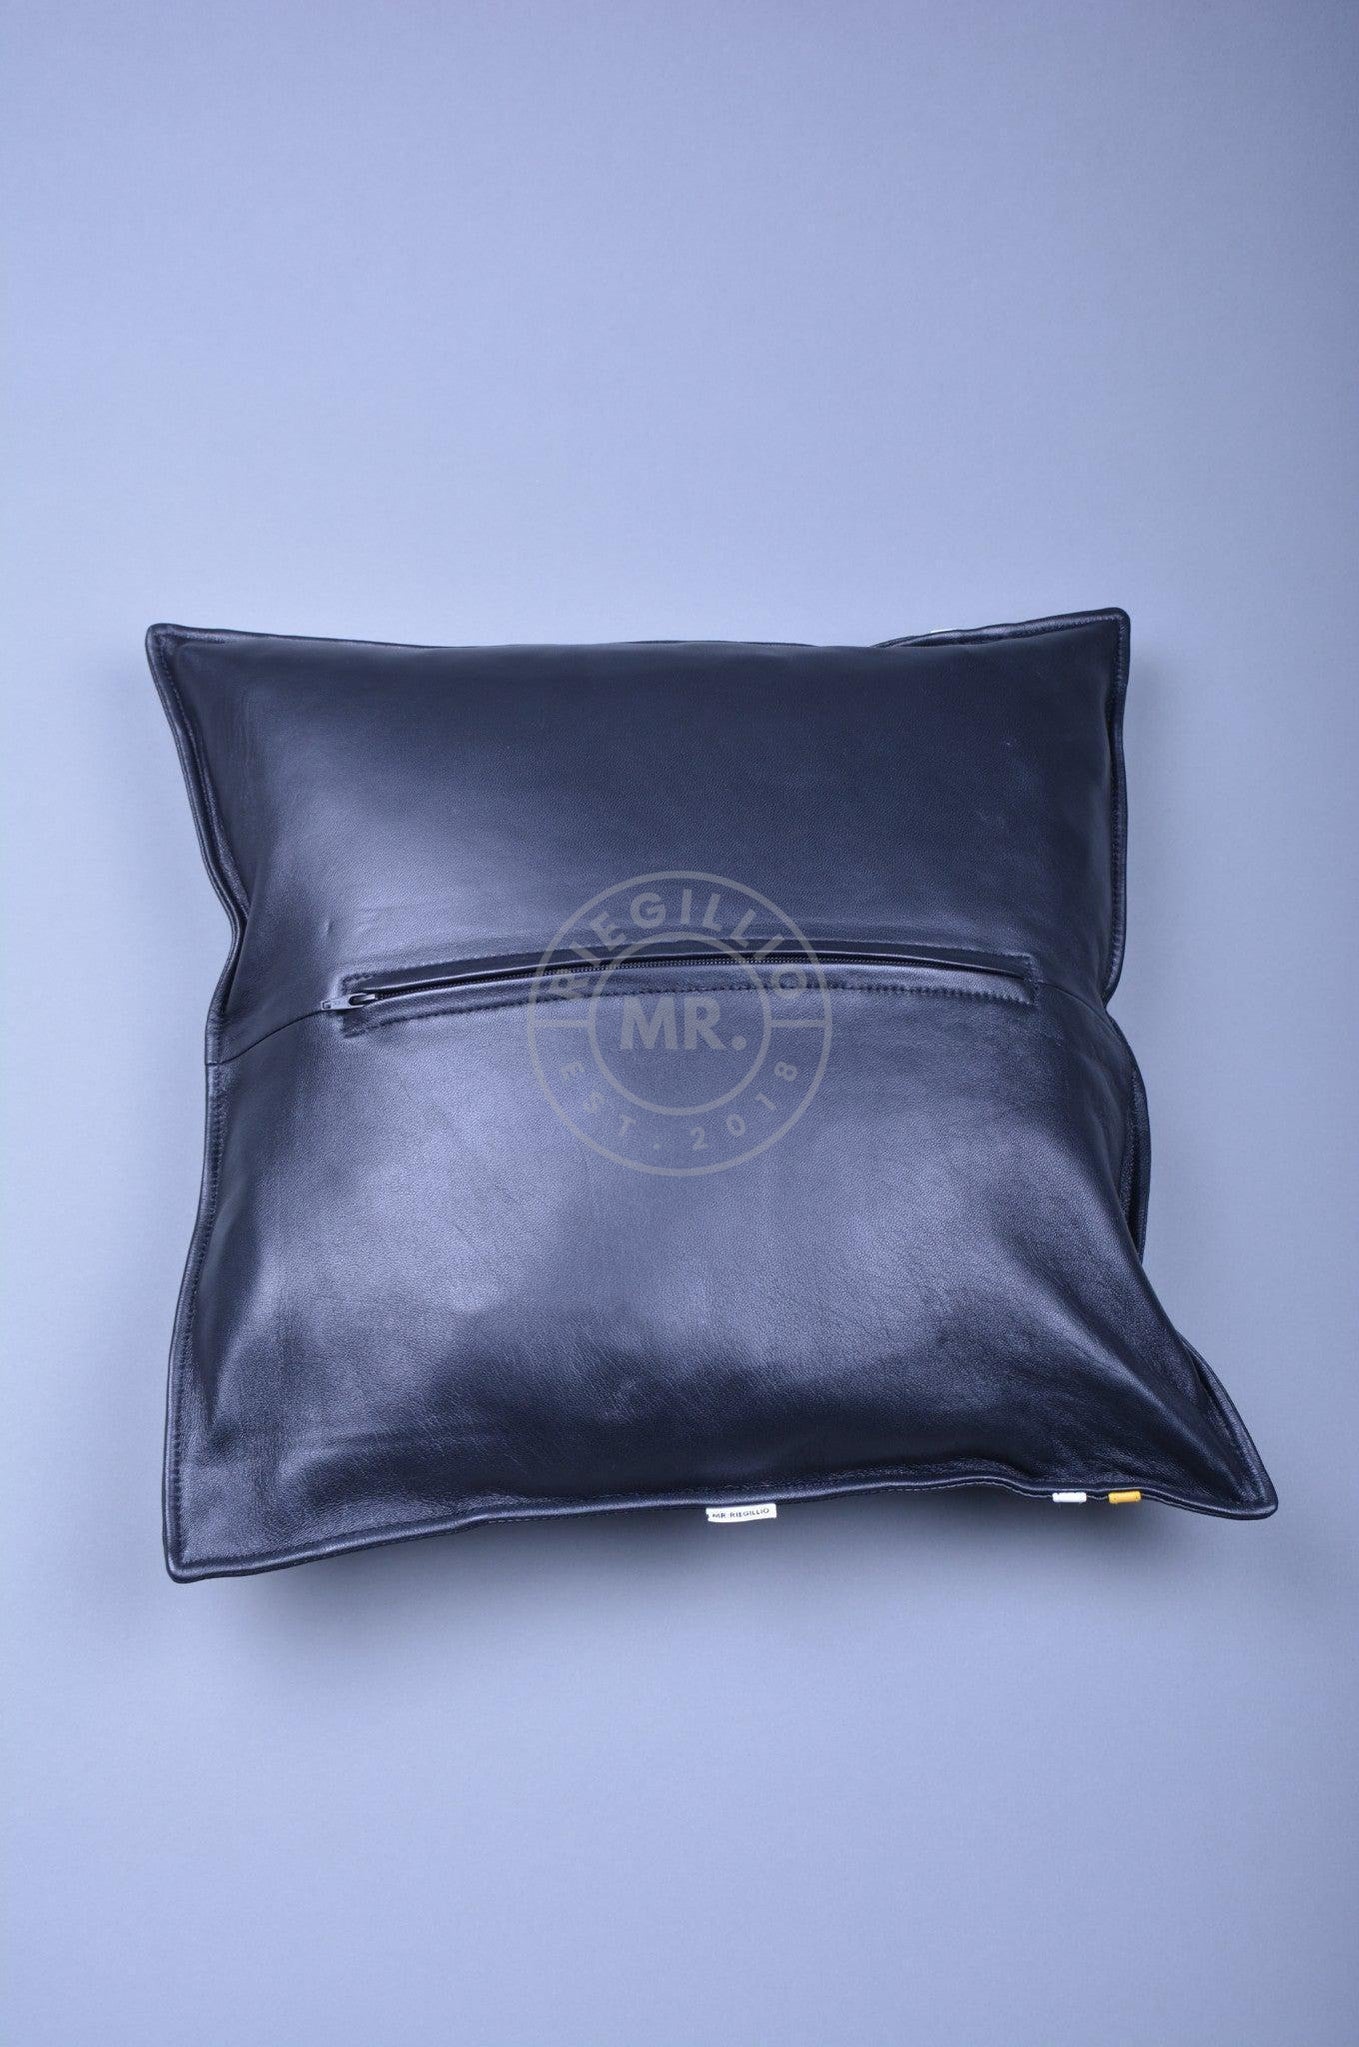 Black Leather Pillow - Yellow Stripe at MR. Riegillio